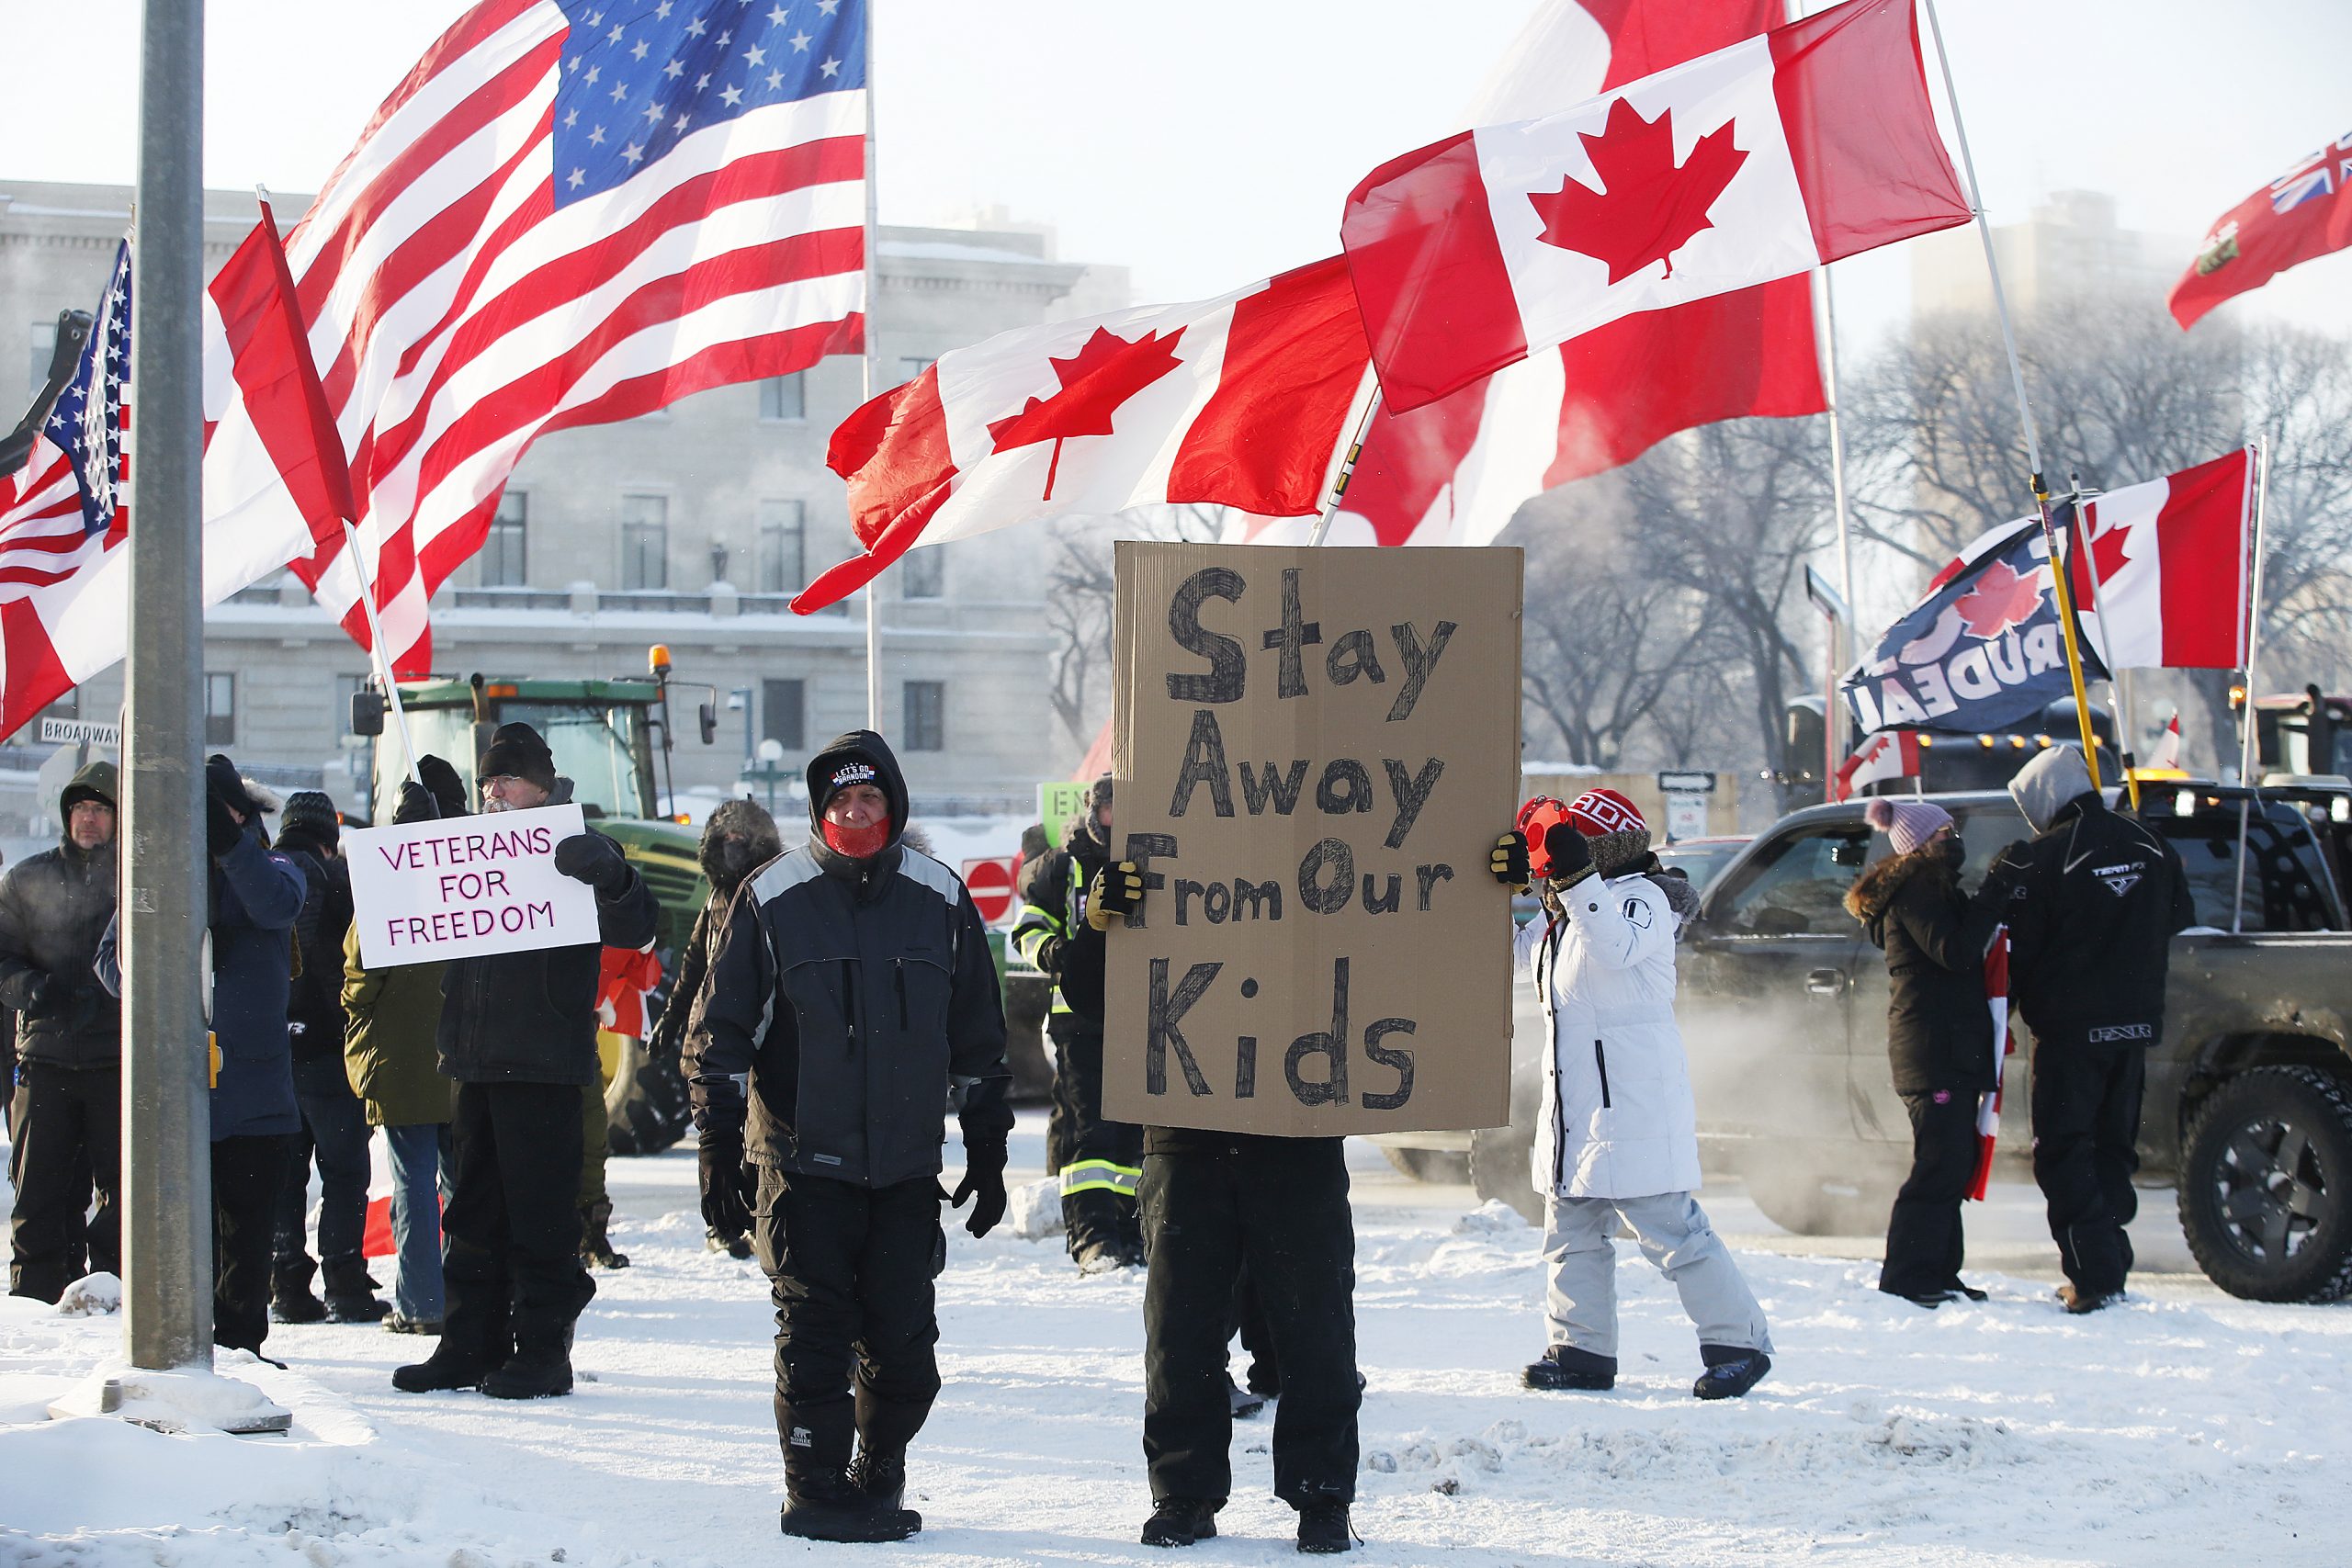 Kanada, Otava, kamiondžije, protest